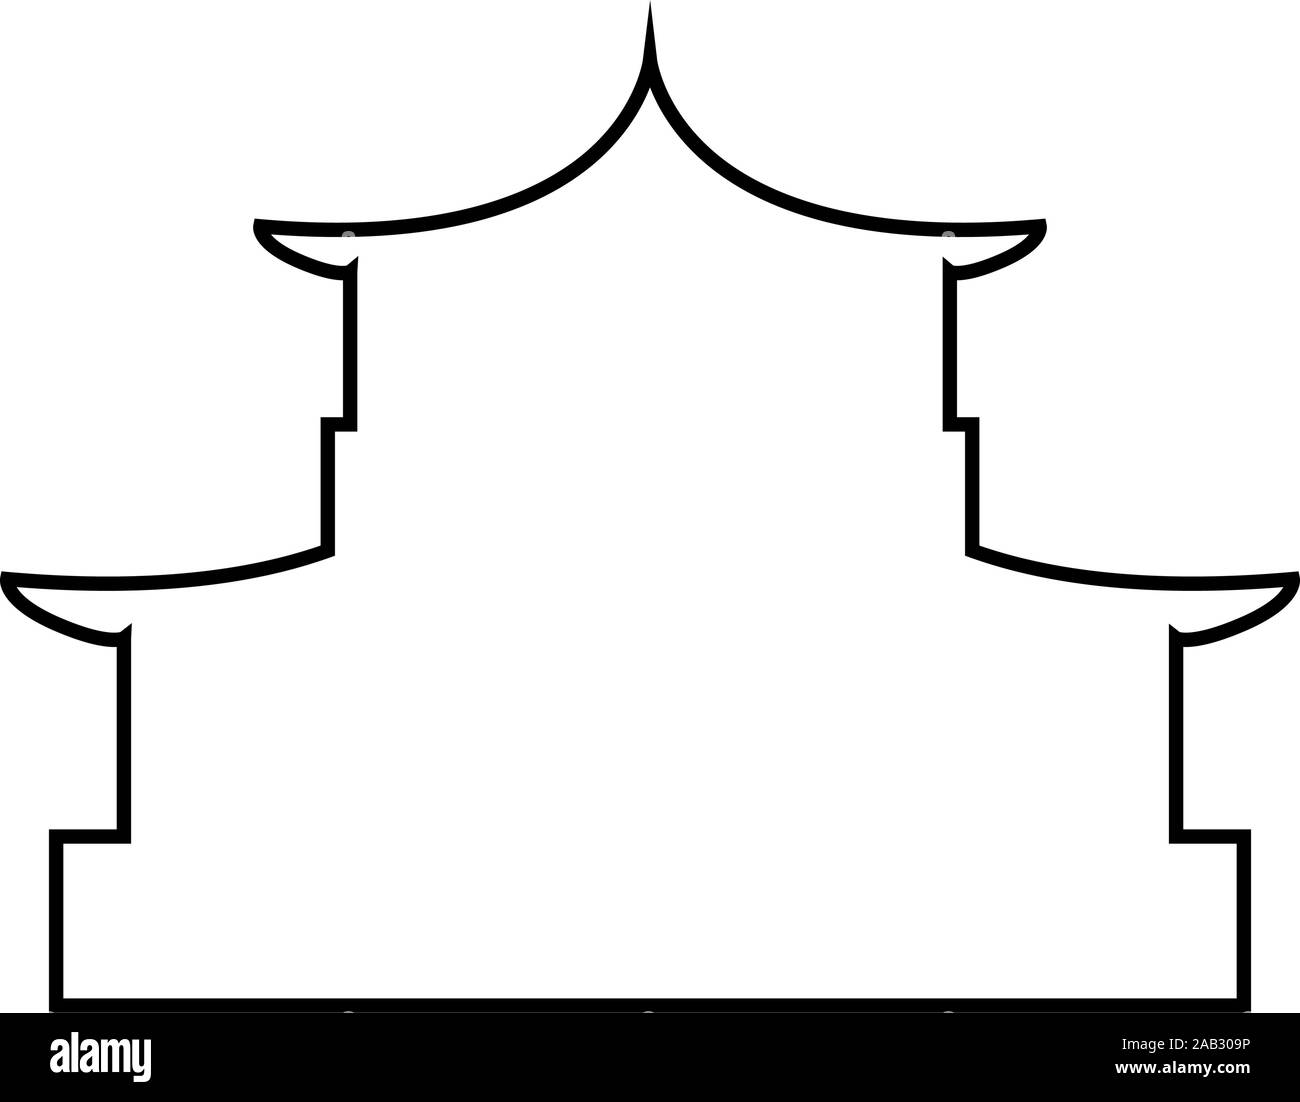 Chinesische Haus Silhouette der traditionellen asiatischen Pagode Japanische dom Fassade Symbol outline Schwarz Vector Illustration Flat Style simple Image Stock Vektor